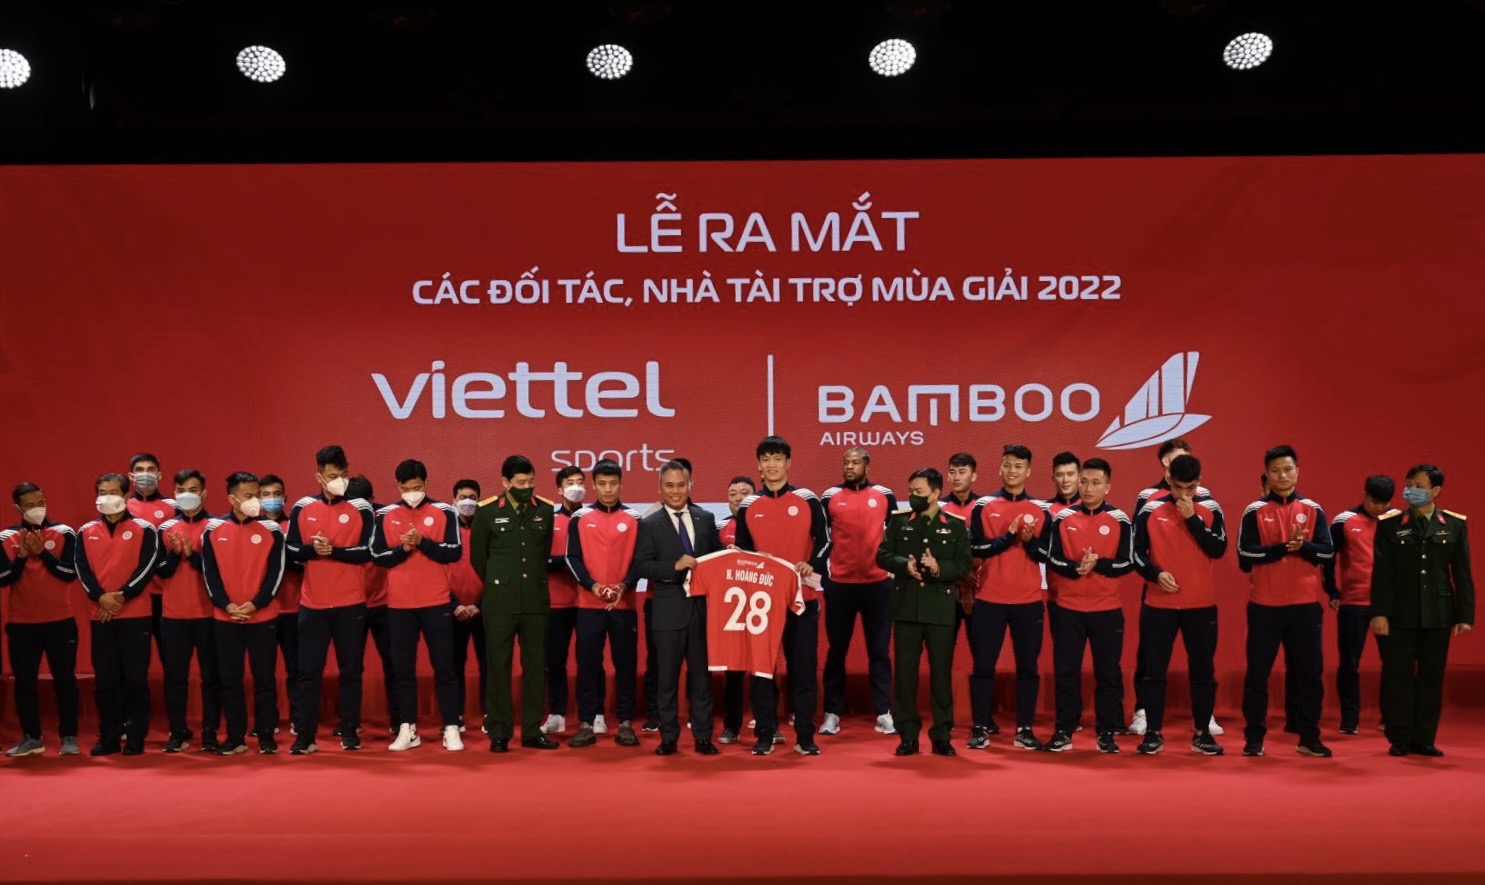 Bamboo Airways là nhà vận chuyển chính thức của CLB bóng đá Viettel mùa giải 2022 - Ảnh 1.